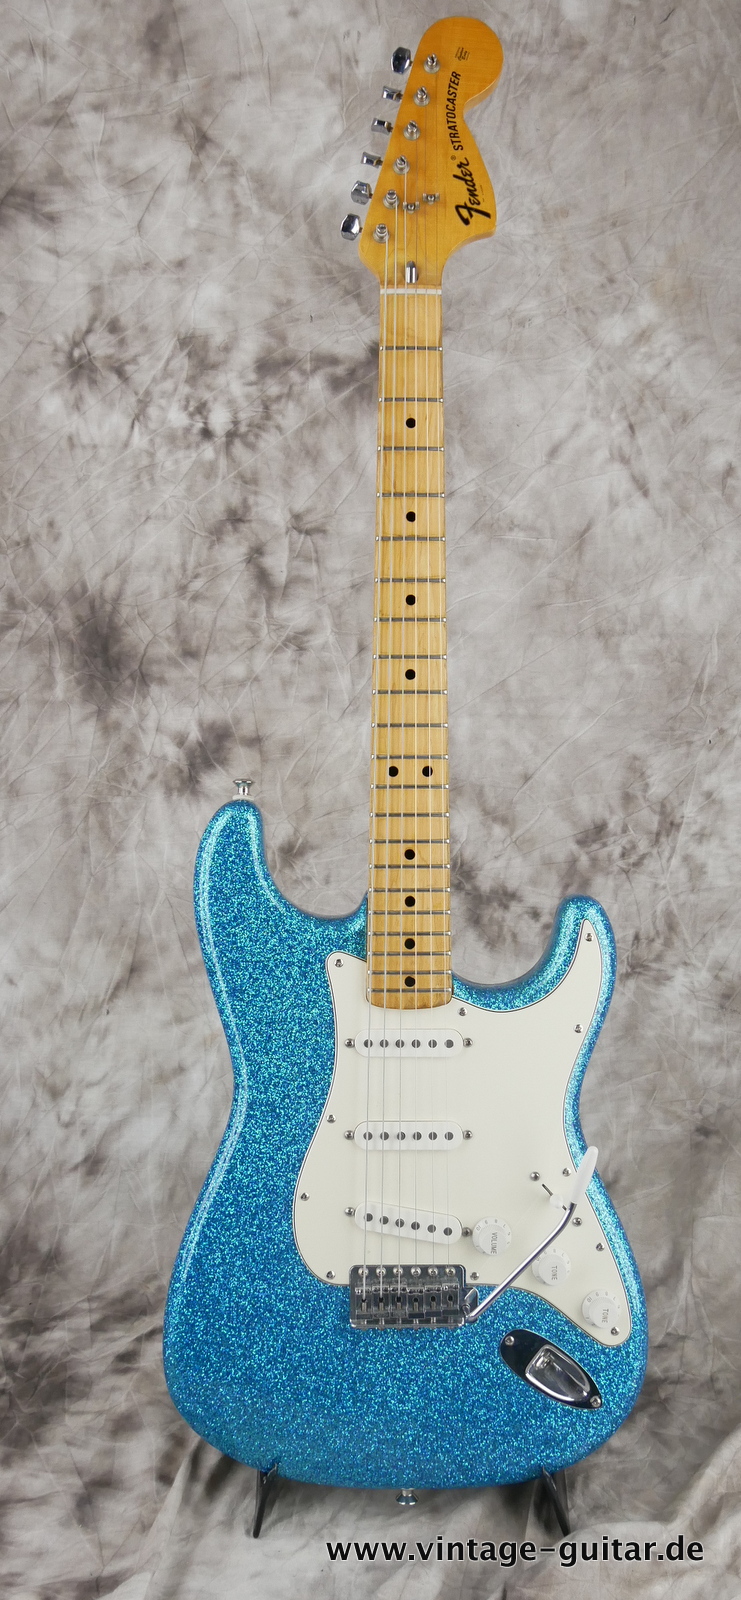 Fender-Stratocaster-1974c-blue-sparkle-001.JPG